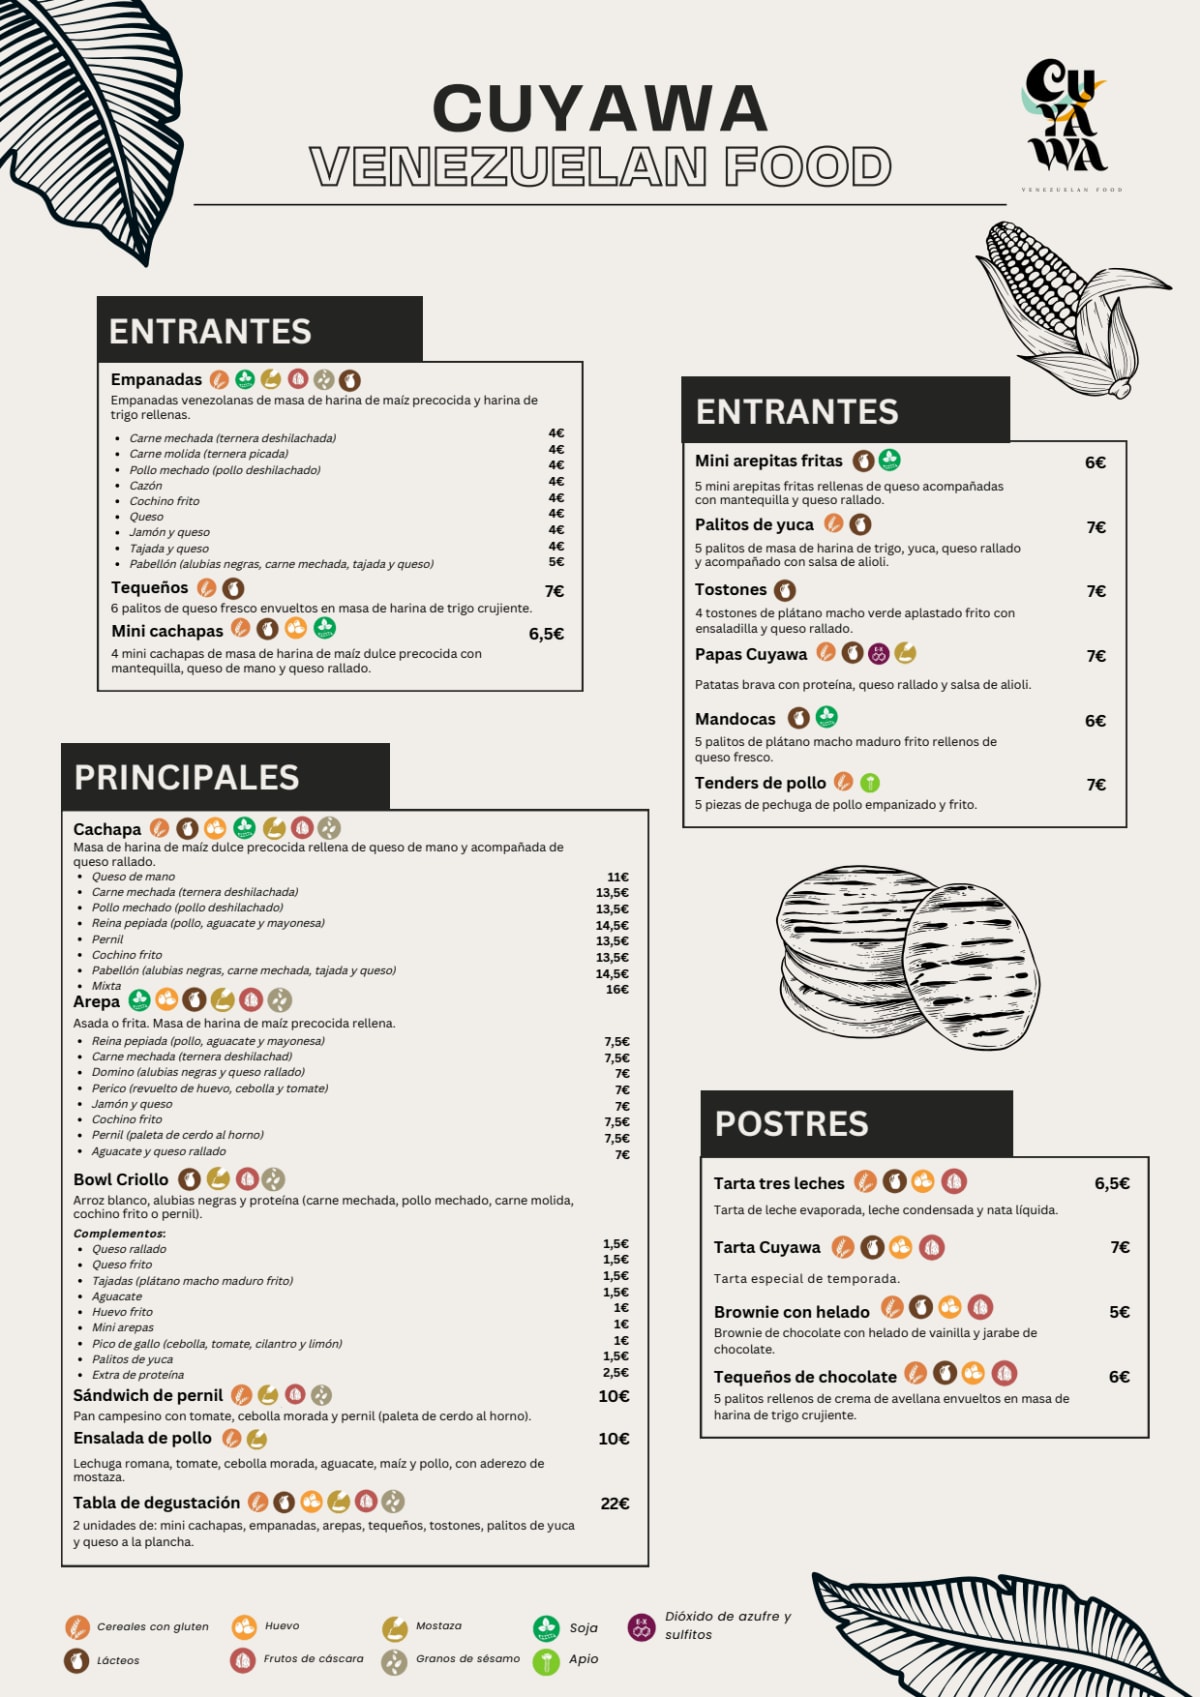 Cuyawa Venezuelan Food menu